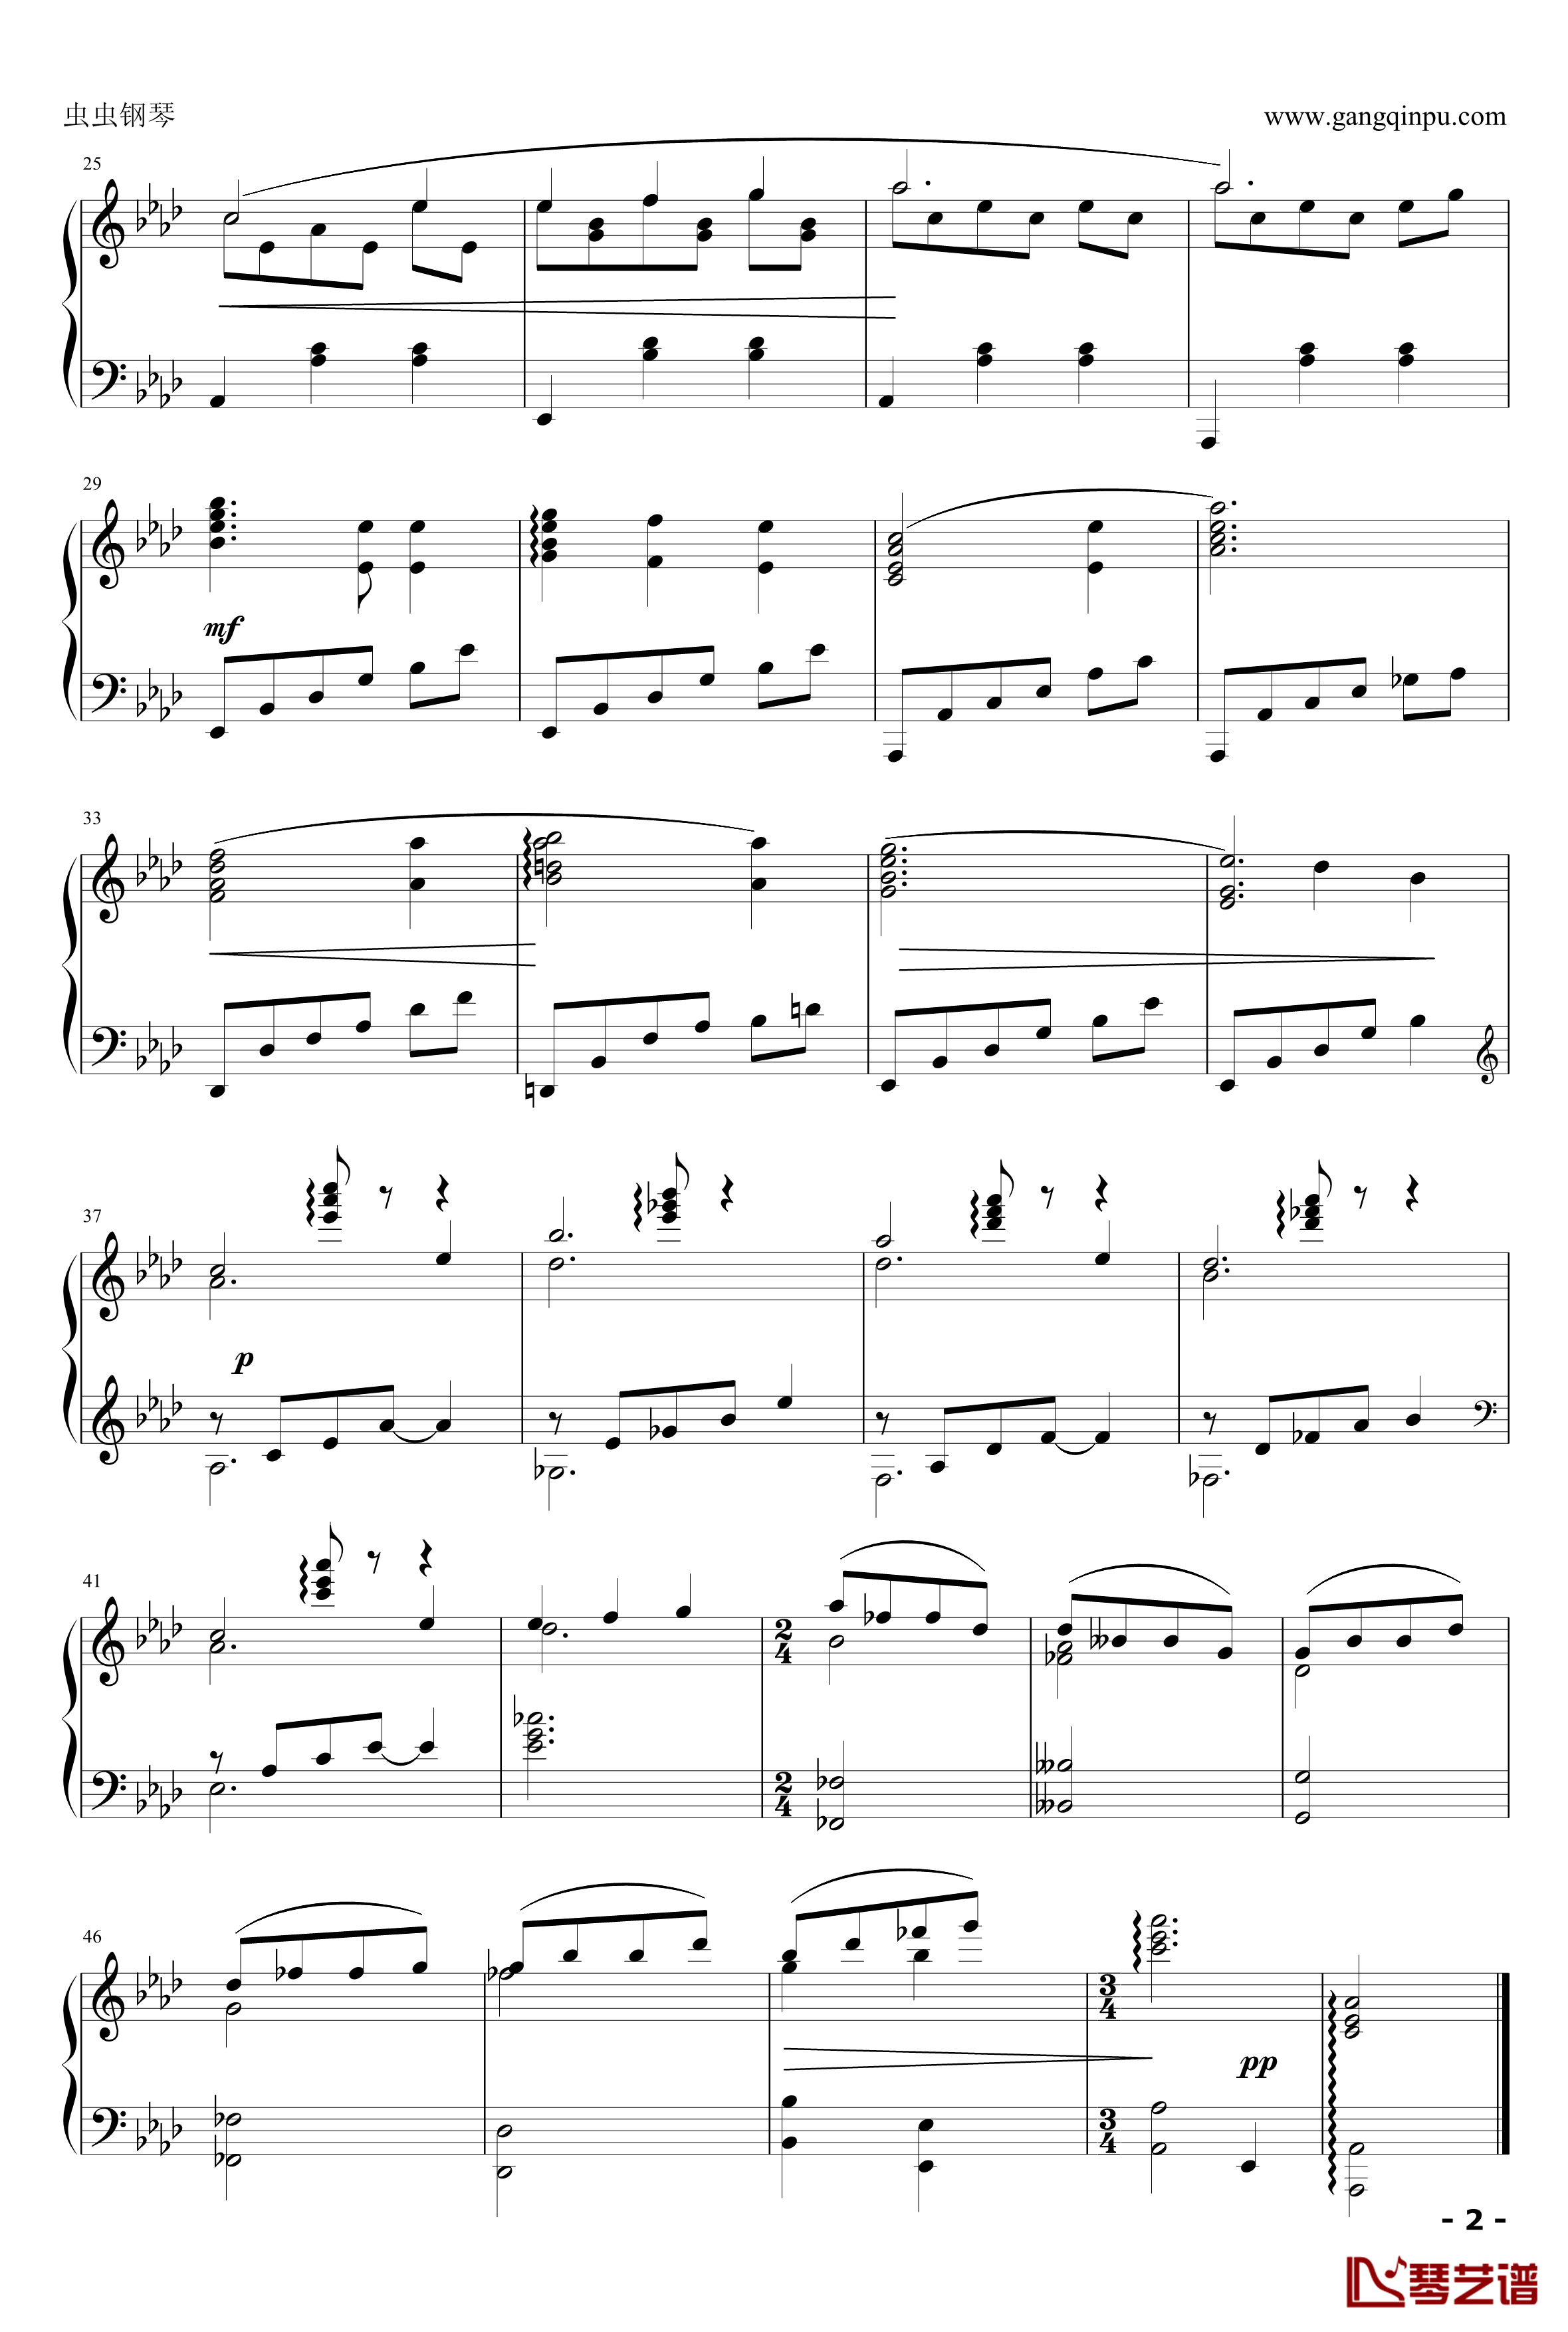 雪绒花钢琴谱-和声优美版-雨田-音乐之声2